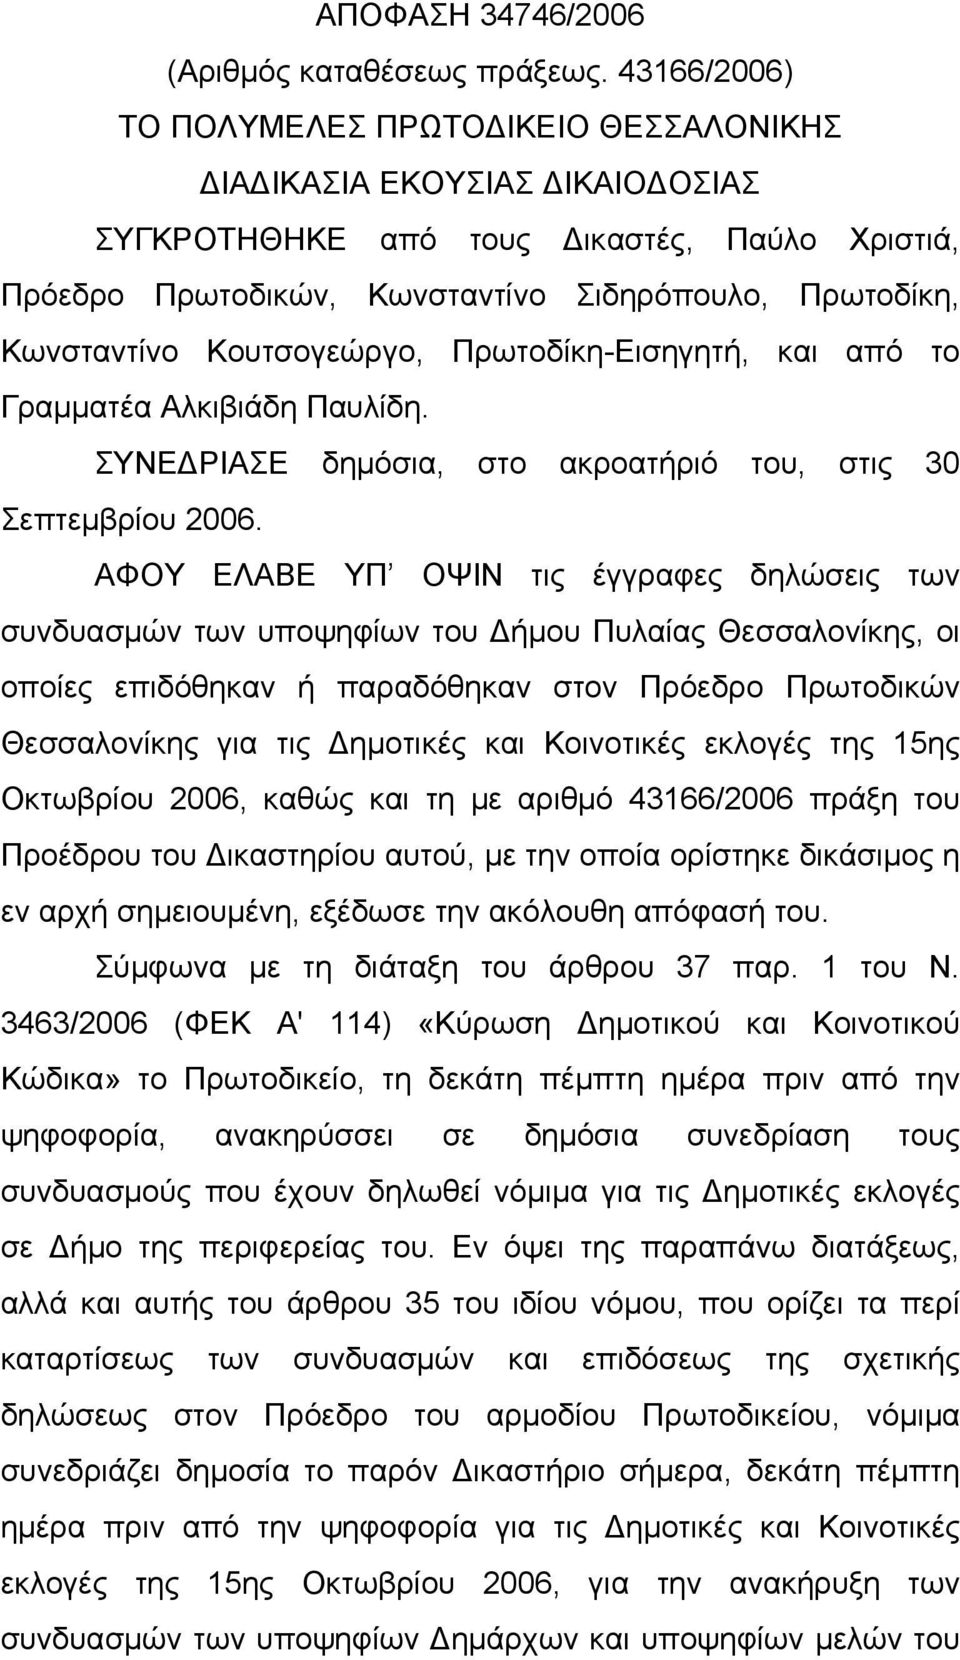 Κουτσογεώργο, Πρωτοδίκη-Εισηγητή, και από το Γραμματέα Αλκιβιάδη Παυλίδη. ΣΥΝΕΔΡΙΑΣΕ δημόσια, στο ακροατήριό του, στις 30 Σεπτεμβρίου 2006.